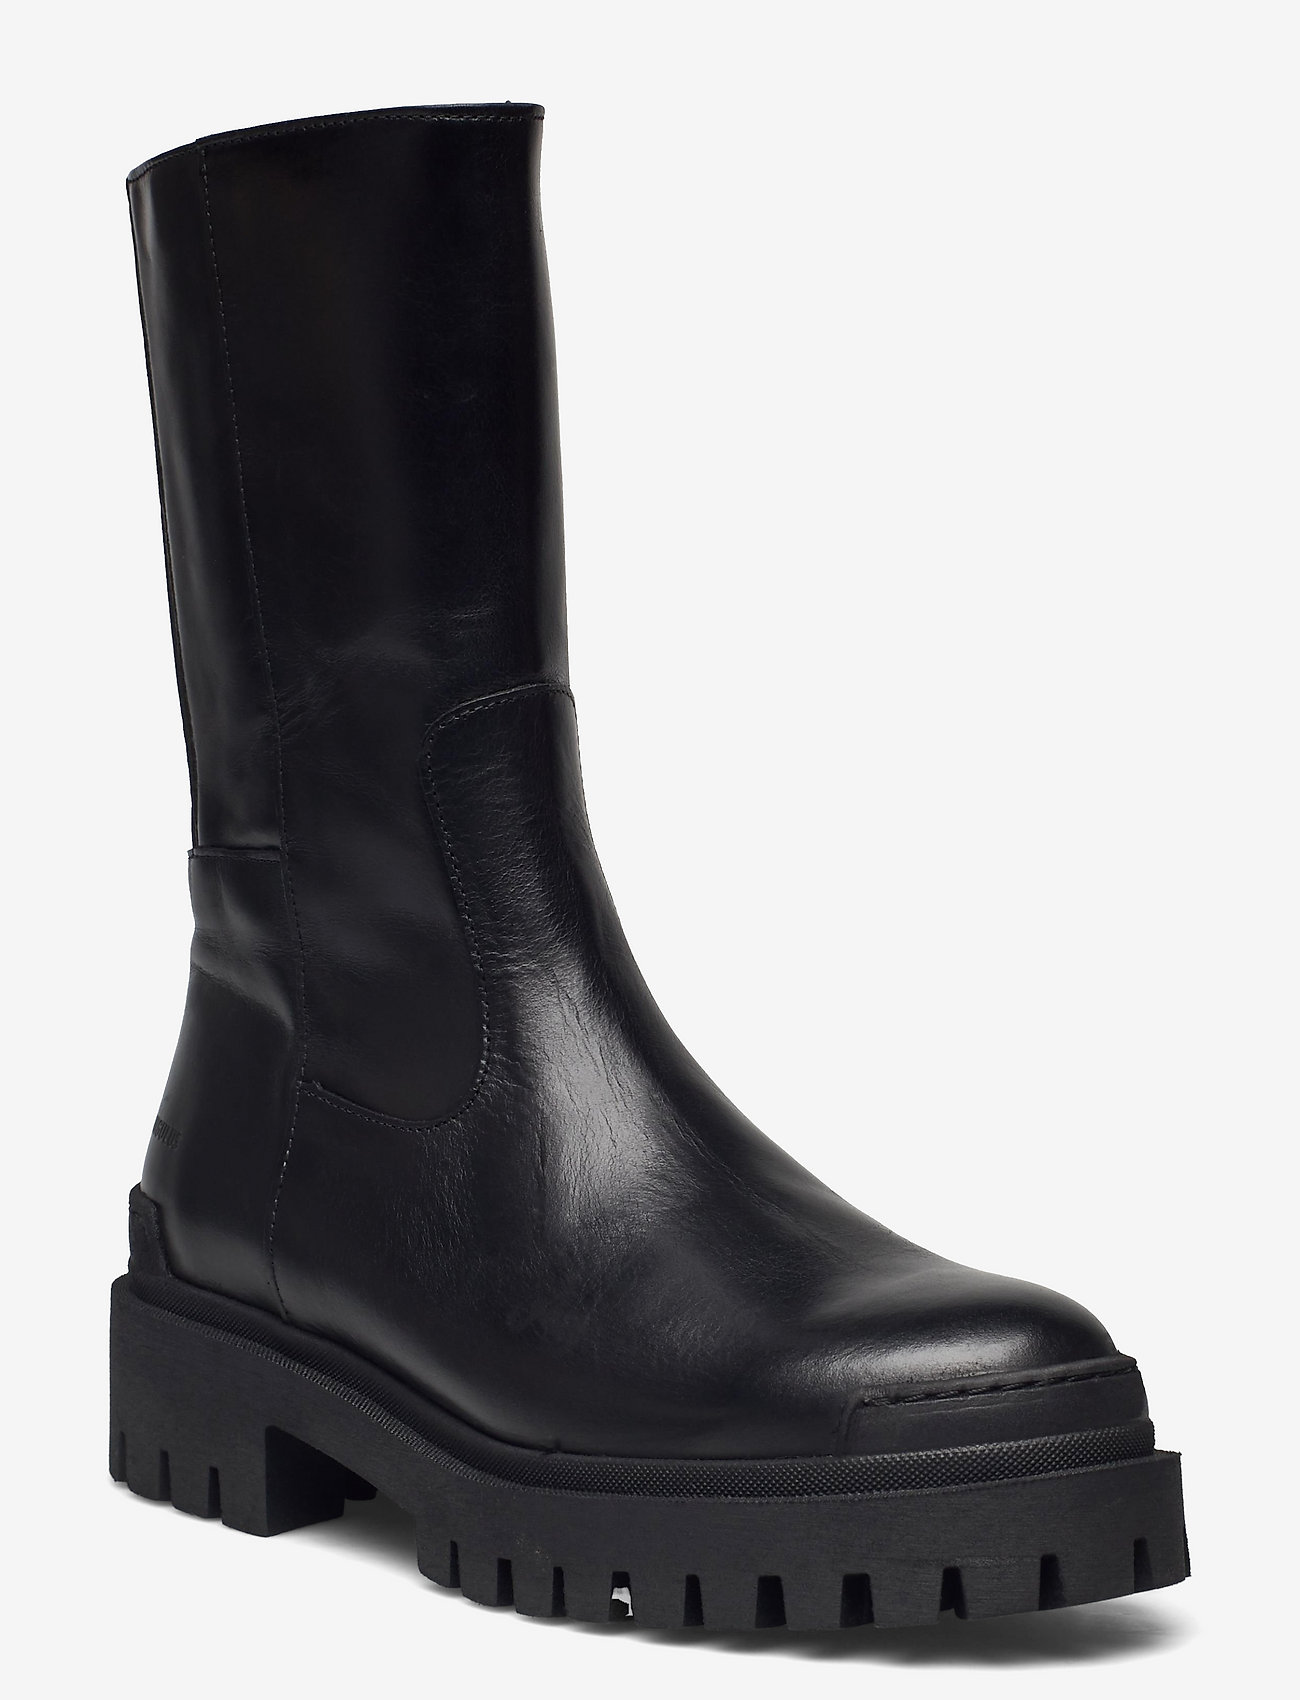 ANGULUS - Boots - flat - flade ankelstøvler - 1835/019 black /black - 0